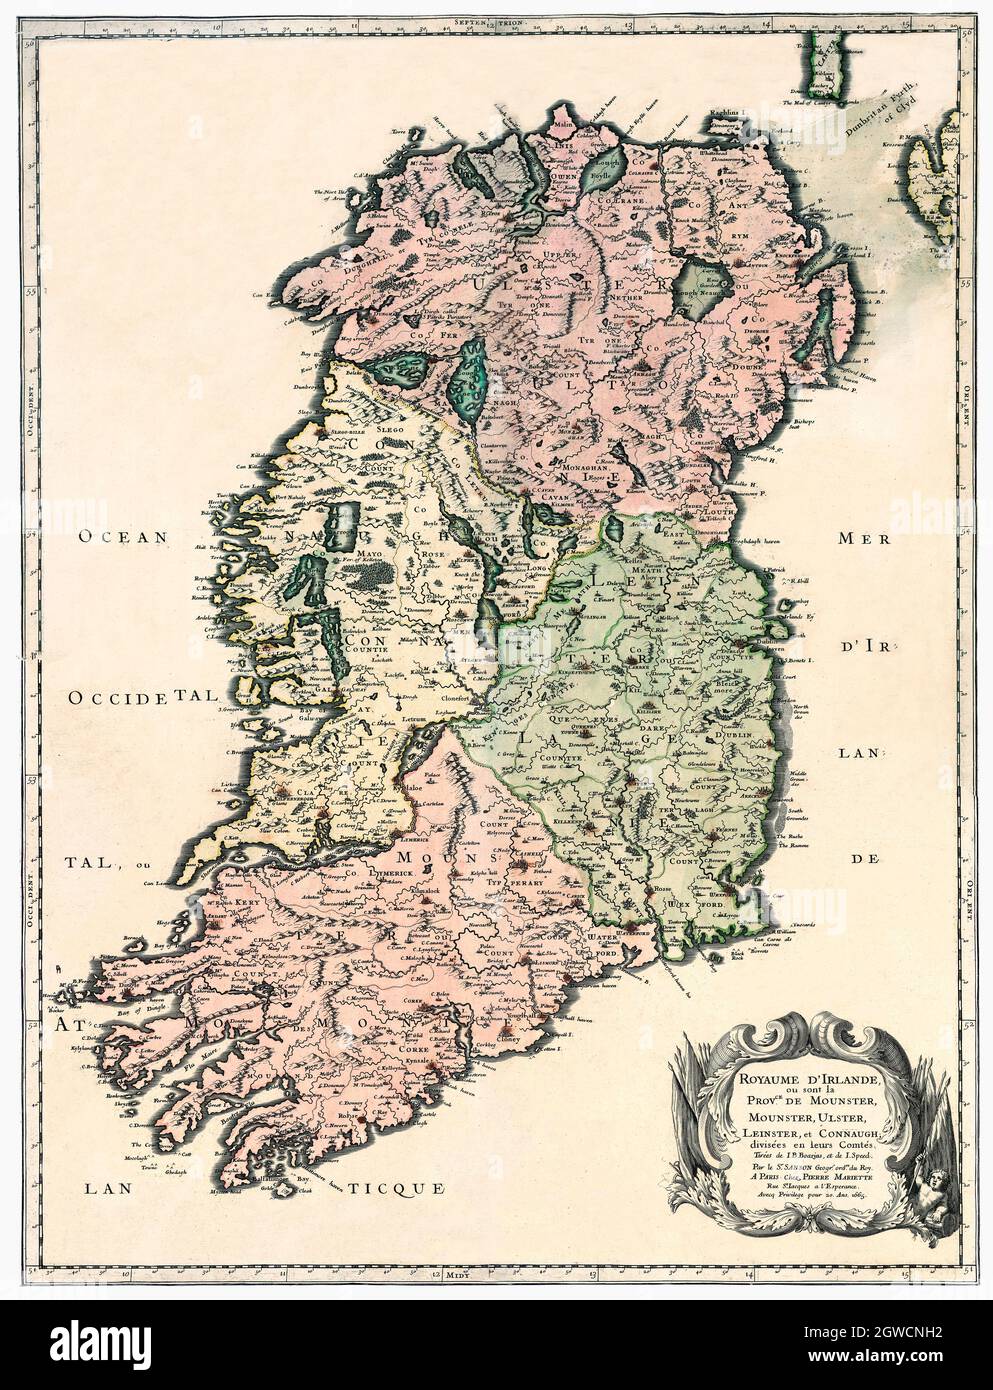 'Royaume d'Irlande et les Province de Munster, Ulster, Leinster et Connaught.' Traduzione: "Il Regno d'Irlanda e le province di Munster, Ulster, Leinster e Connaugh". Pubblicato nel 1665 e creato da Nicolas Sanson (1600-1667). NB questa è un'immagine generata dal computer che combina due mappe, una della metà settentrionale dell'Irlanda, e la seconda, la metà meridionale - vedere i numeri di immagine 2GWCMYW e 2GWCM6H Foto Stock